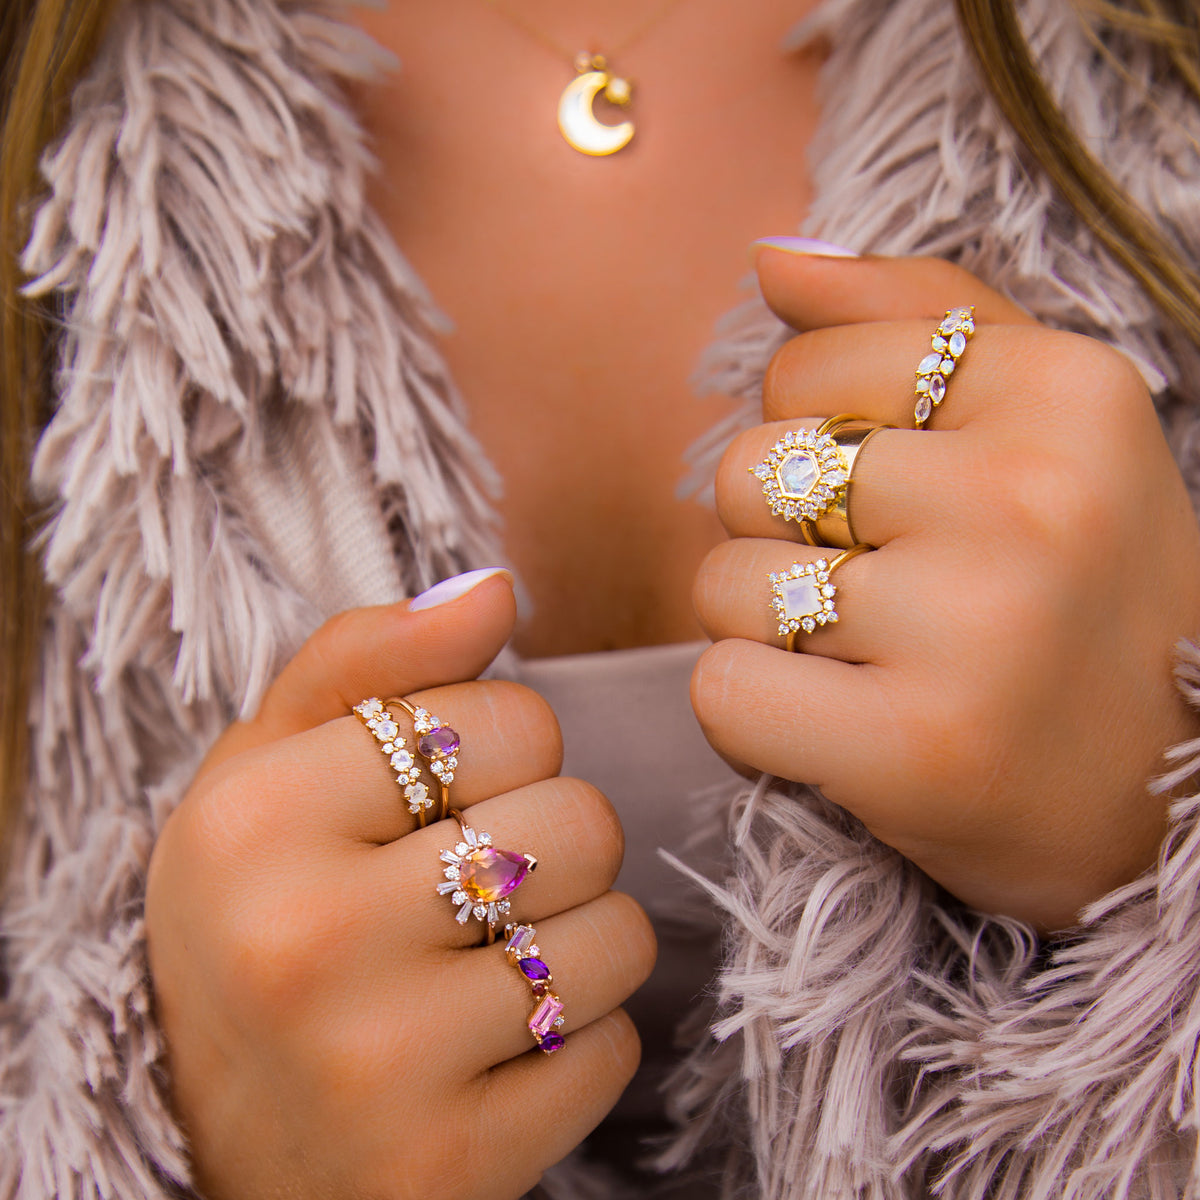 Opal & Diamond Farah Ring